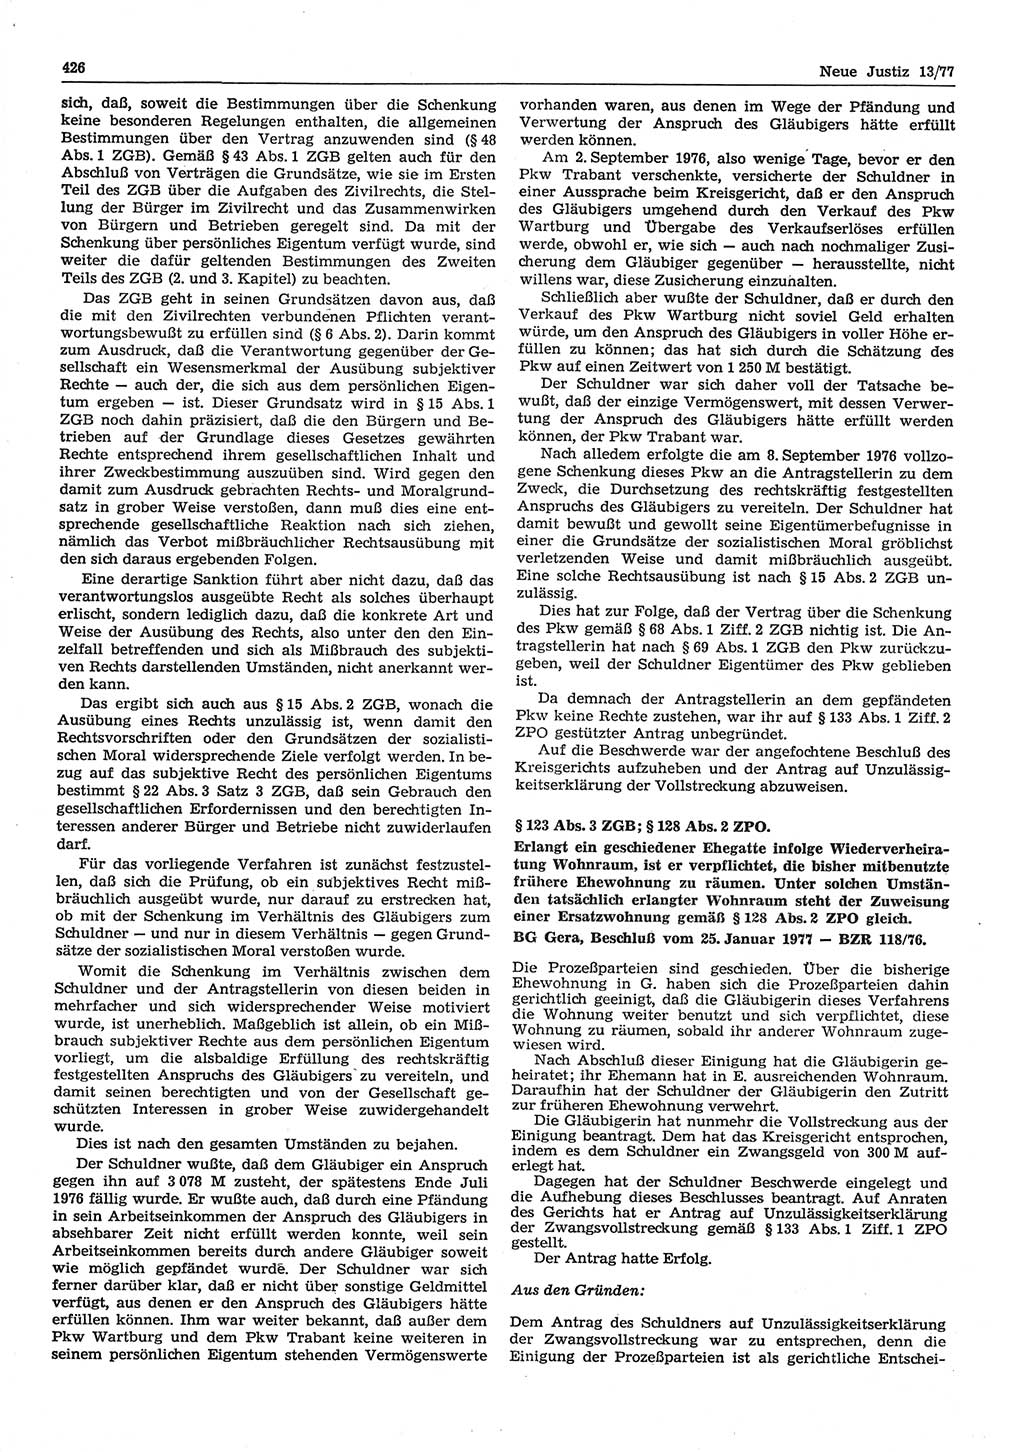 Neue Justiz (NJ), Zeitschrift für Recht und Rechtswissenschaft-Zeitschrift, sozialistisches Recht und Gesetzlichkeit, 31. Jahrgang 1977, Seite 426 (NJ DDR 1977, S. 426)